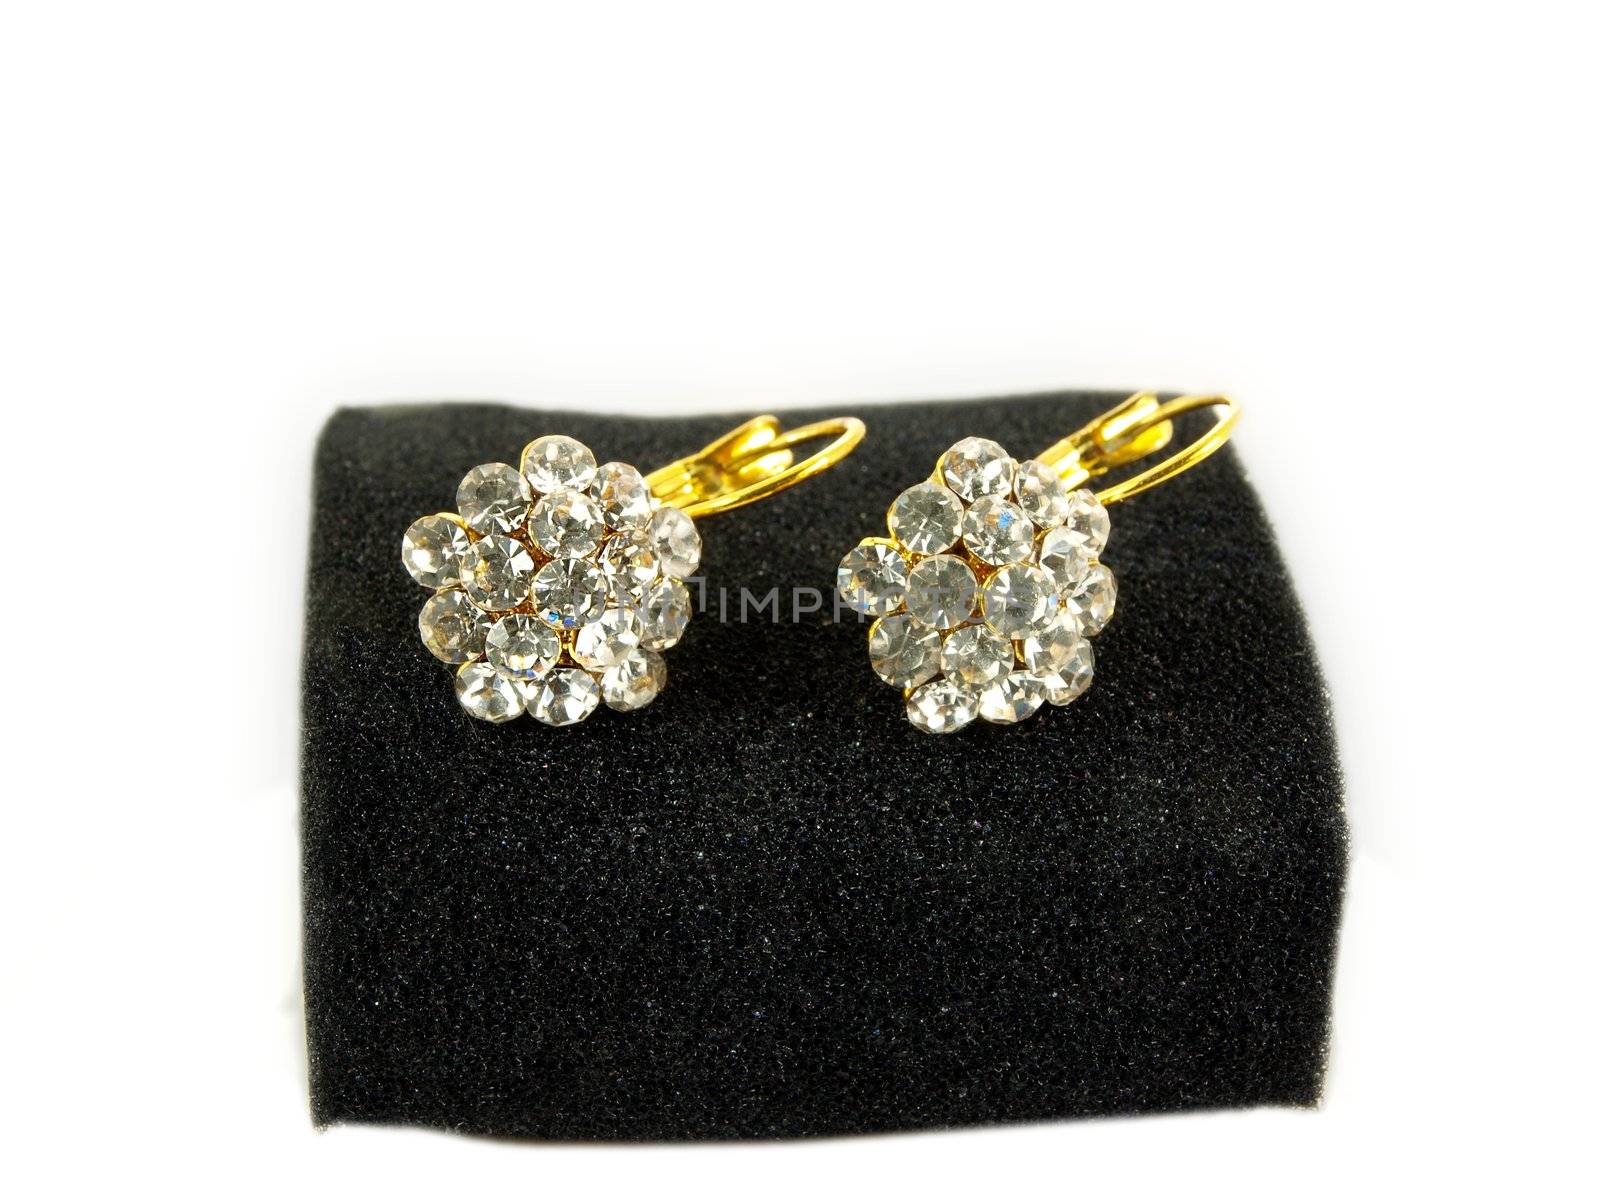 Diamond earrings on black sponge, isolated towards white background